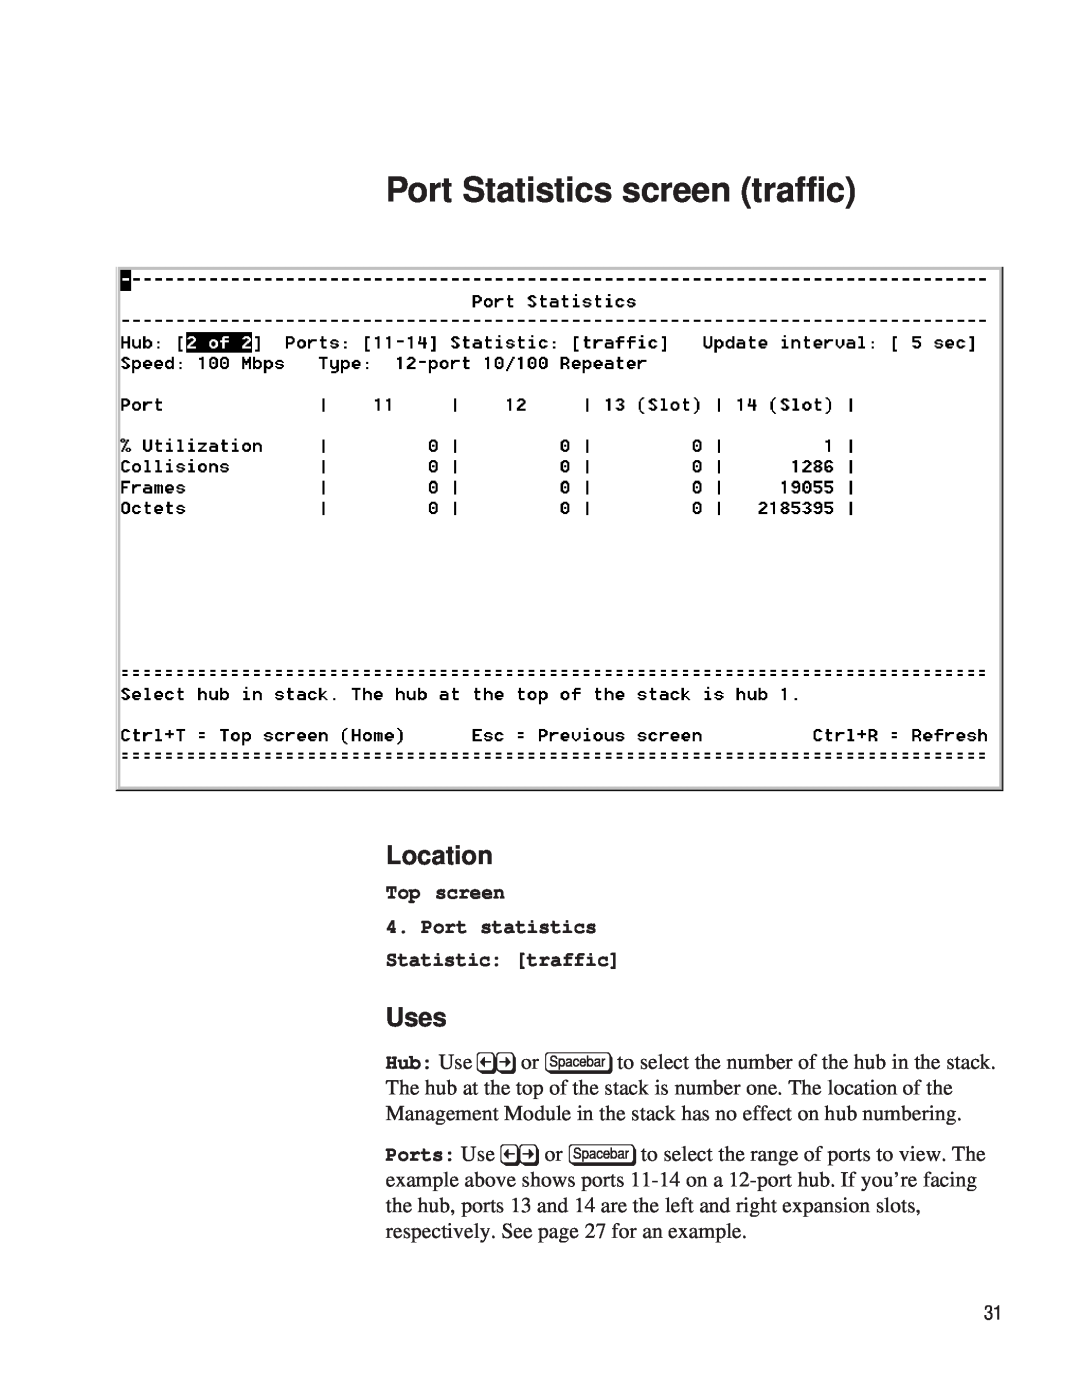 Intel EE110MM manual Port Statistics screen traffic, Location, Uses, Top screen, Port statistics Statistic: traffic 